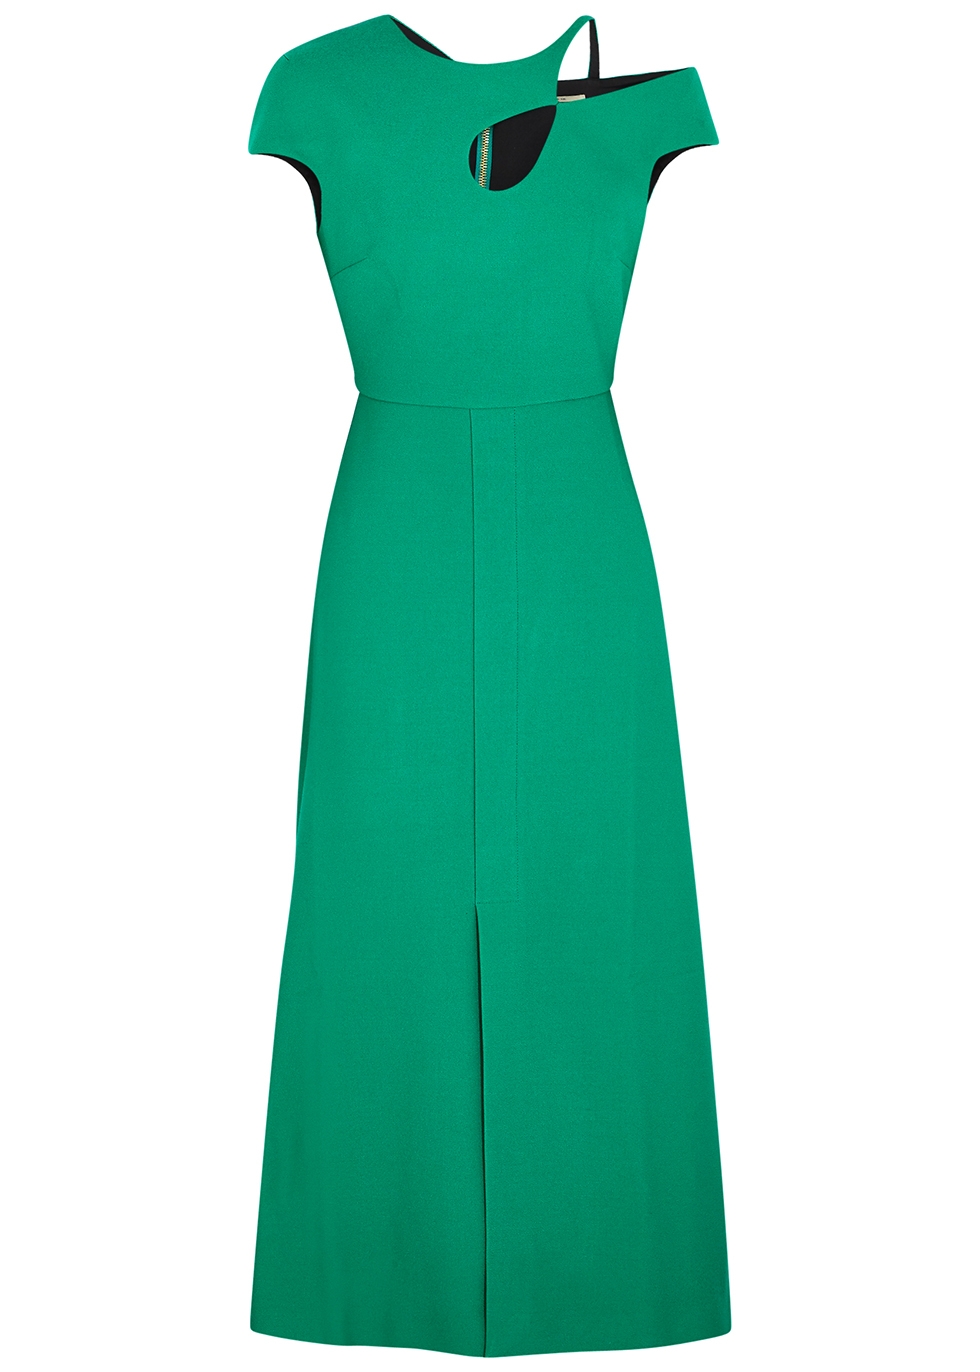 Thean green asymmetric dress